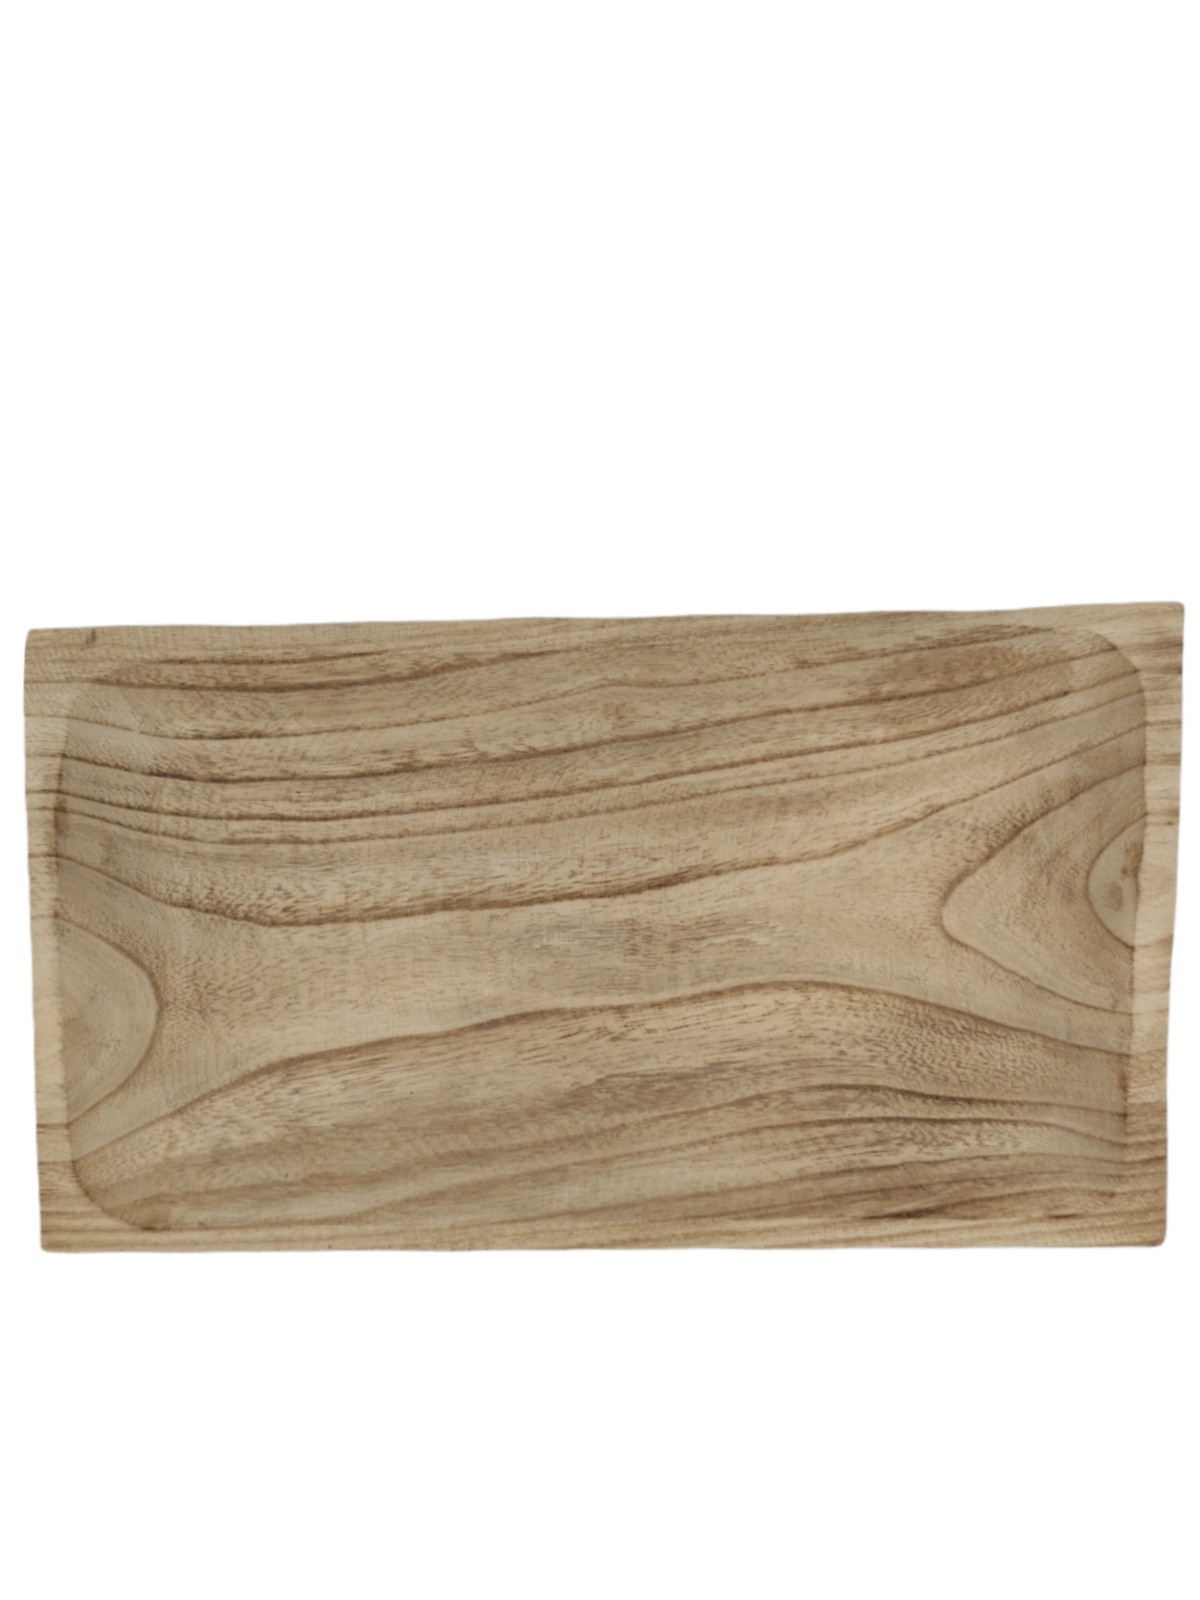 Wooden platter